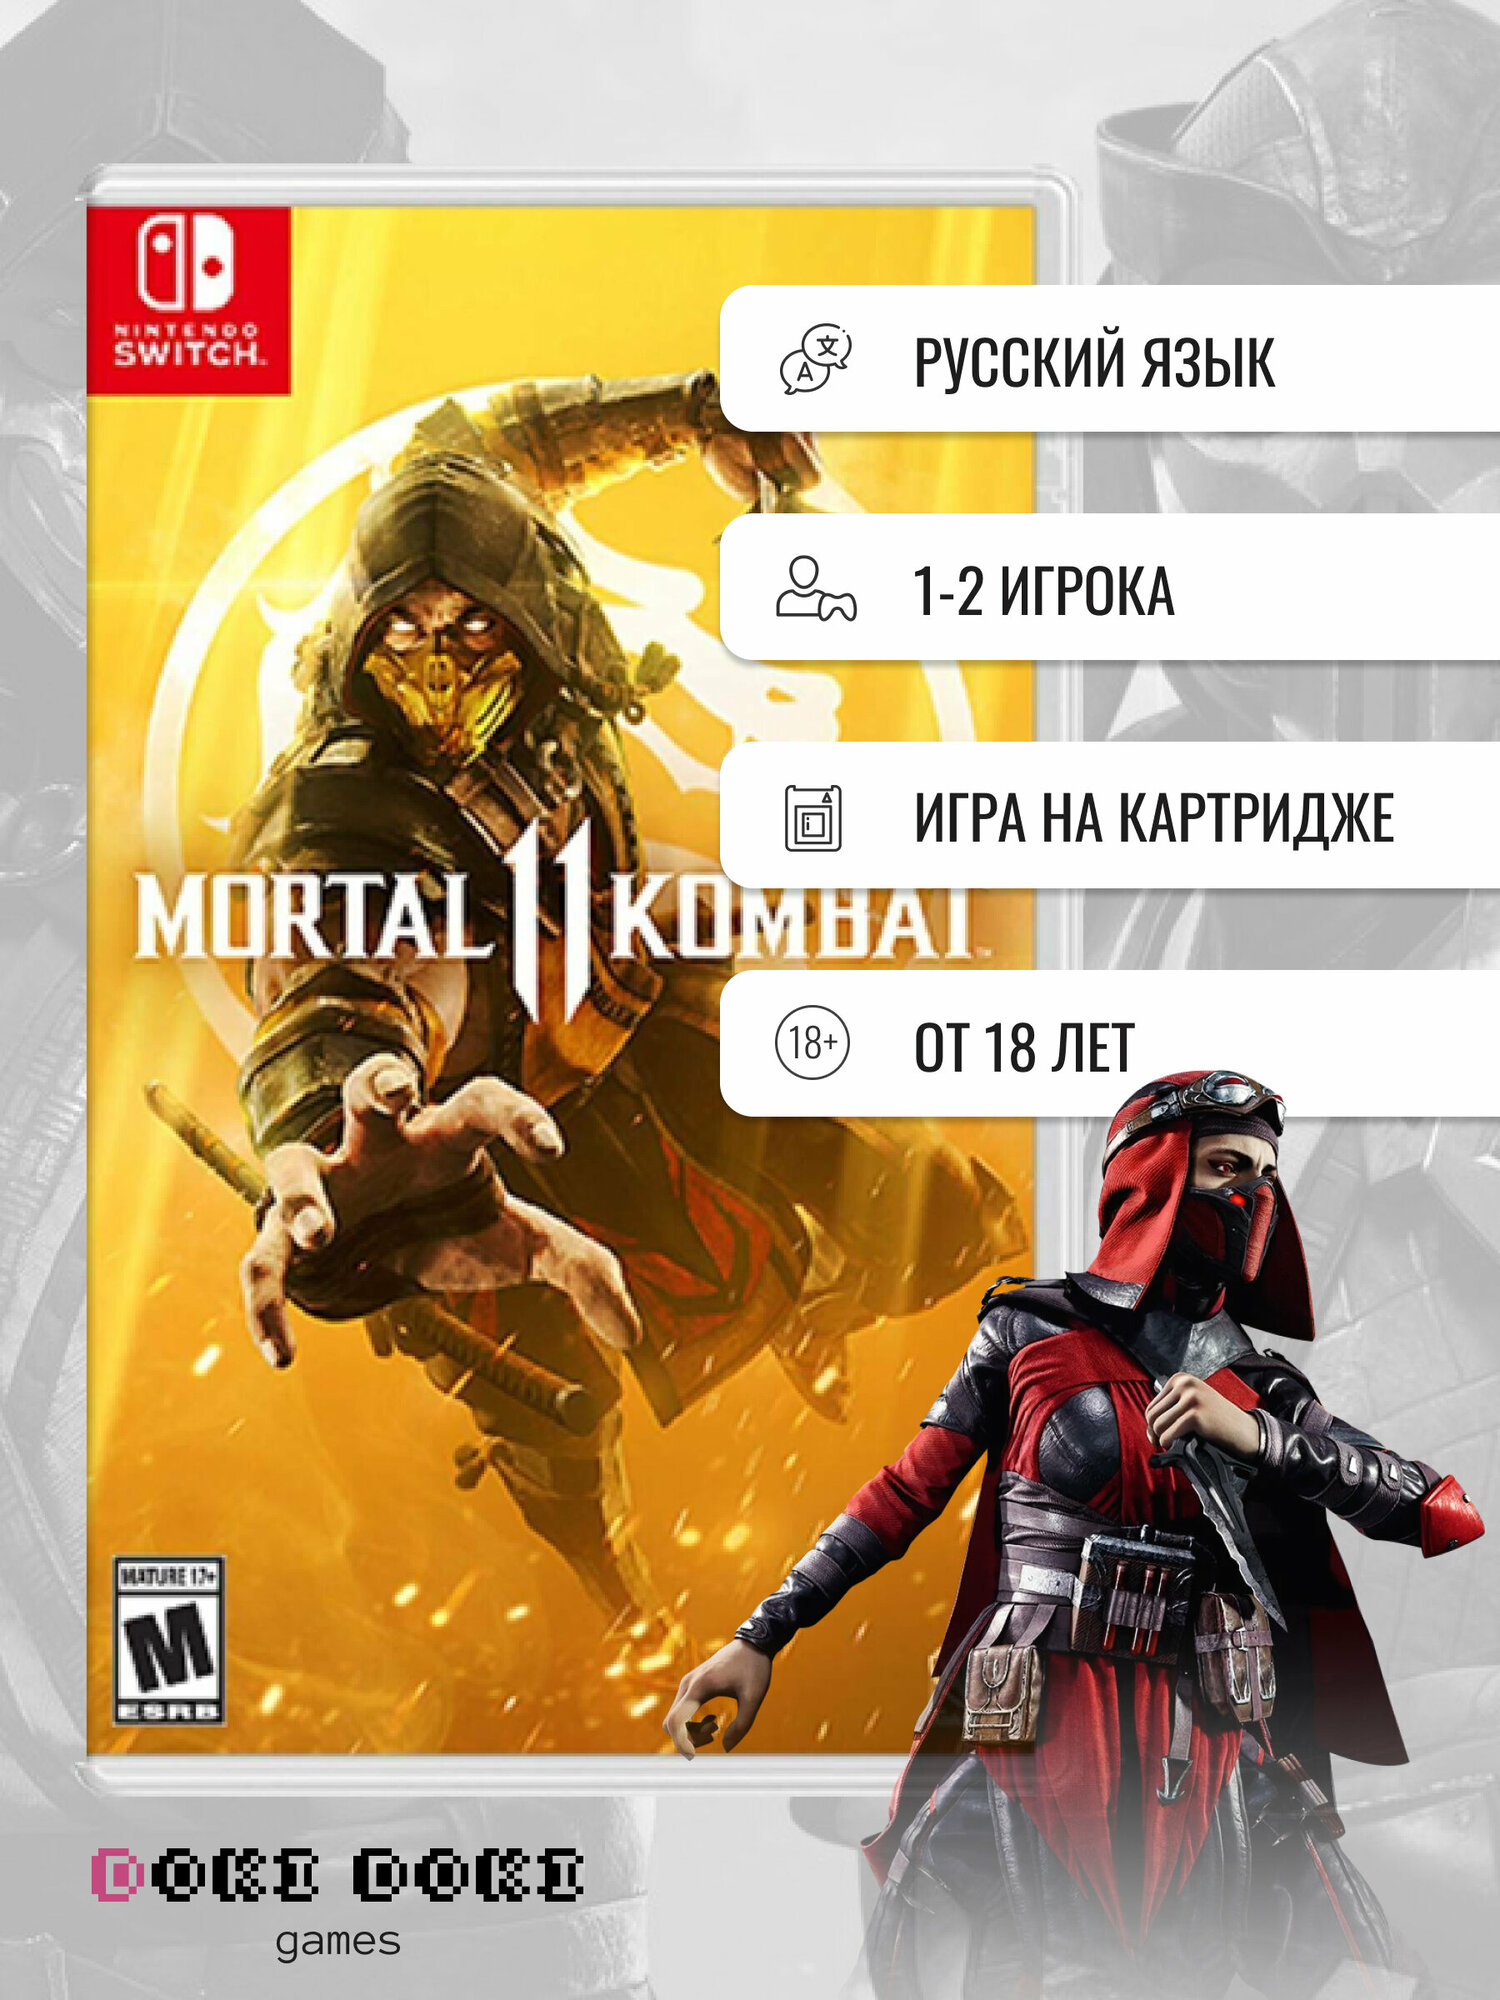 Mortal Kombat 11 (Switch)